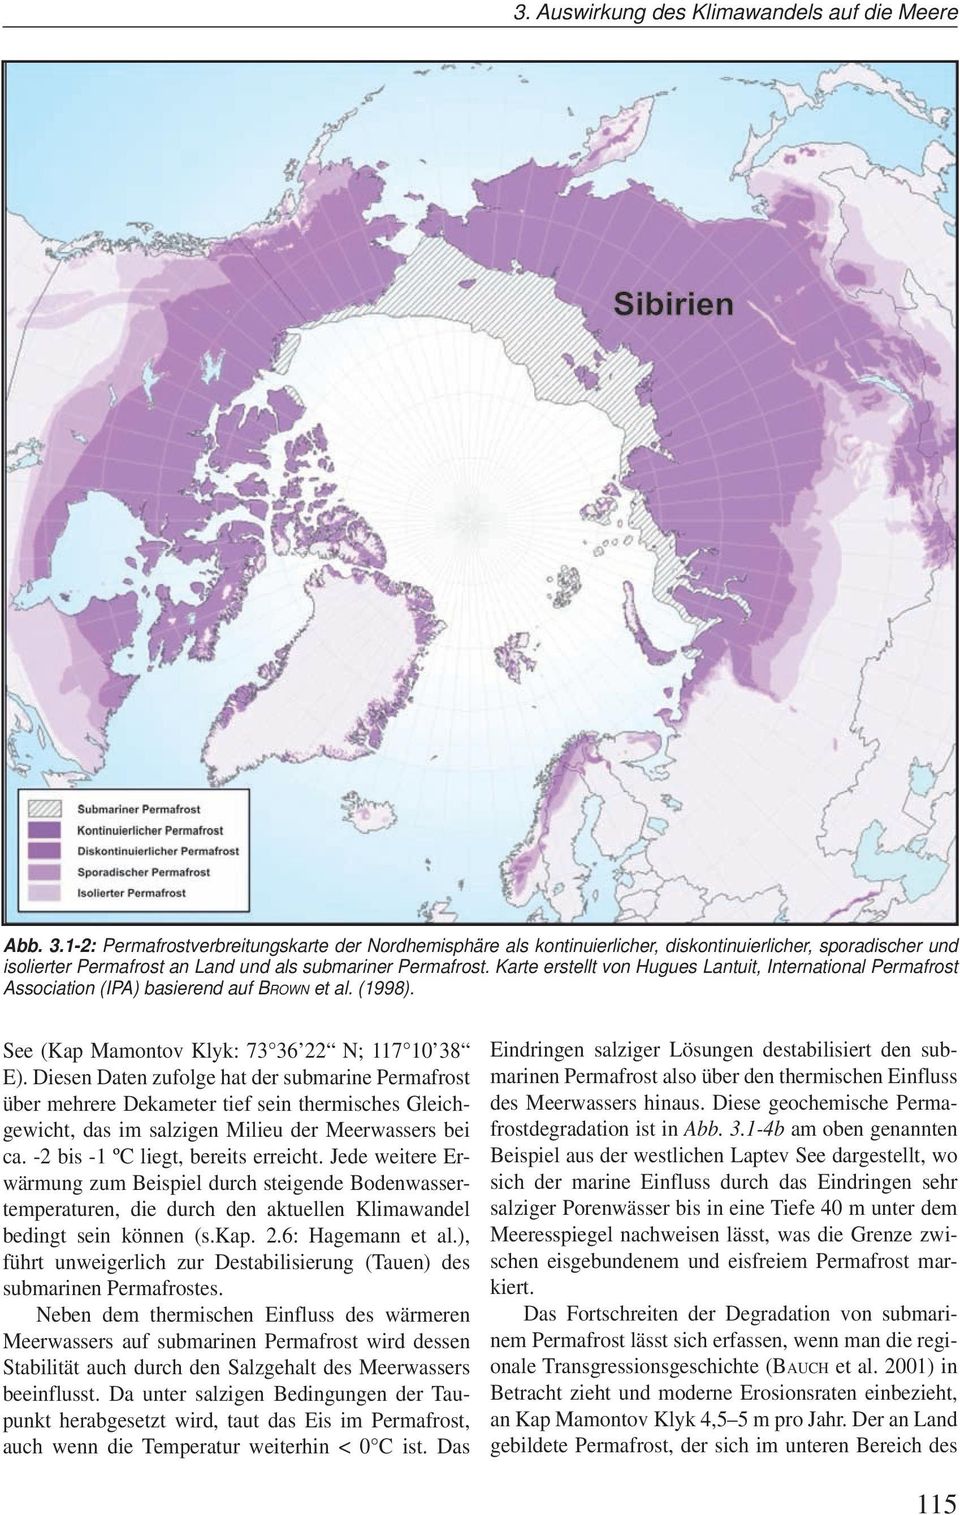 Diesen Daten zufolge hat der submarine Permafrost über mehrere Dekameter tief sein thermisches Gleichgewicht, das im salzigen Milieu der Meerwassers bei ca. -2 bis -1 ºC liegt, bereits erreicht.